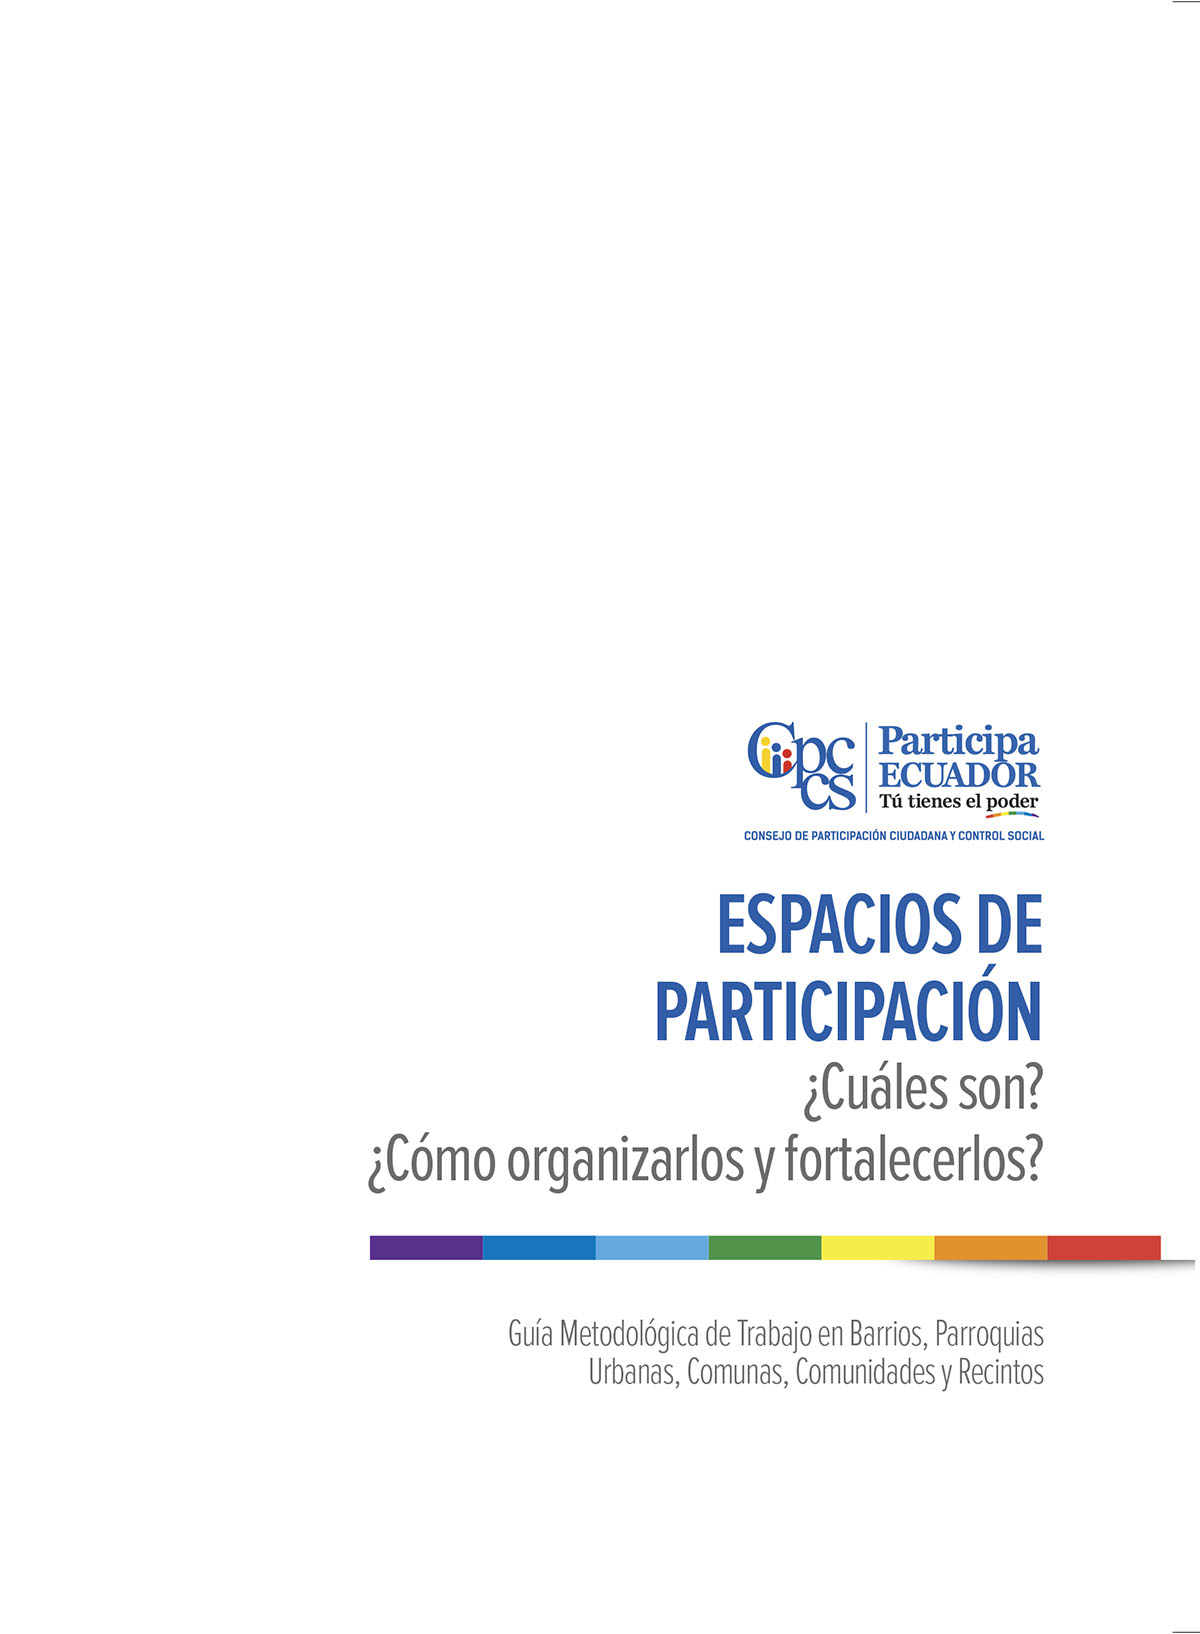 Espacios de participación ¿cuáles son? ¿cómo organizarlos y fortalecerlos?: guía metodológica de trabajo en barrios, parroquias urbanas, comunas, comunidades y recintos